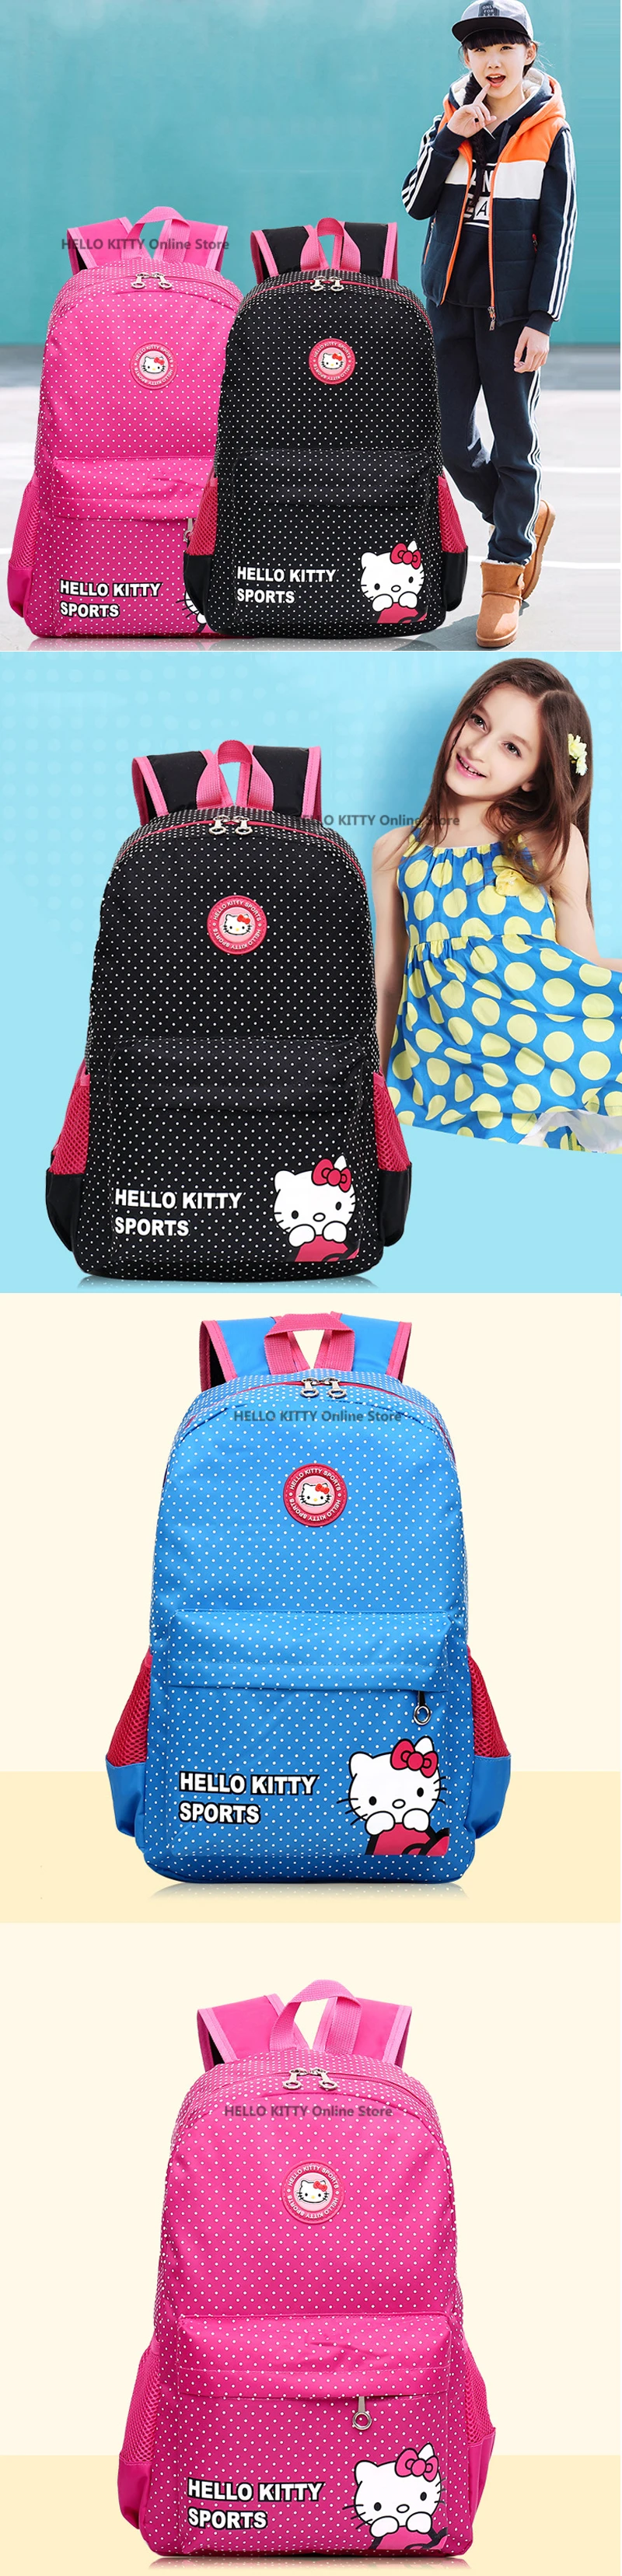 Сумка hello kitty, милый детский мультипликационный модный детский мультифункциональный рюкзак KT розового цвета, Водонепроницаемый Школьный рюкзак для девочек, плюшевый рюкзак на плечо